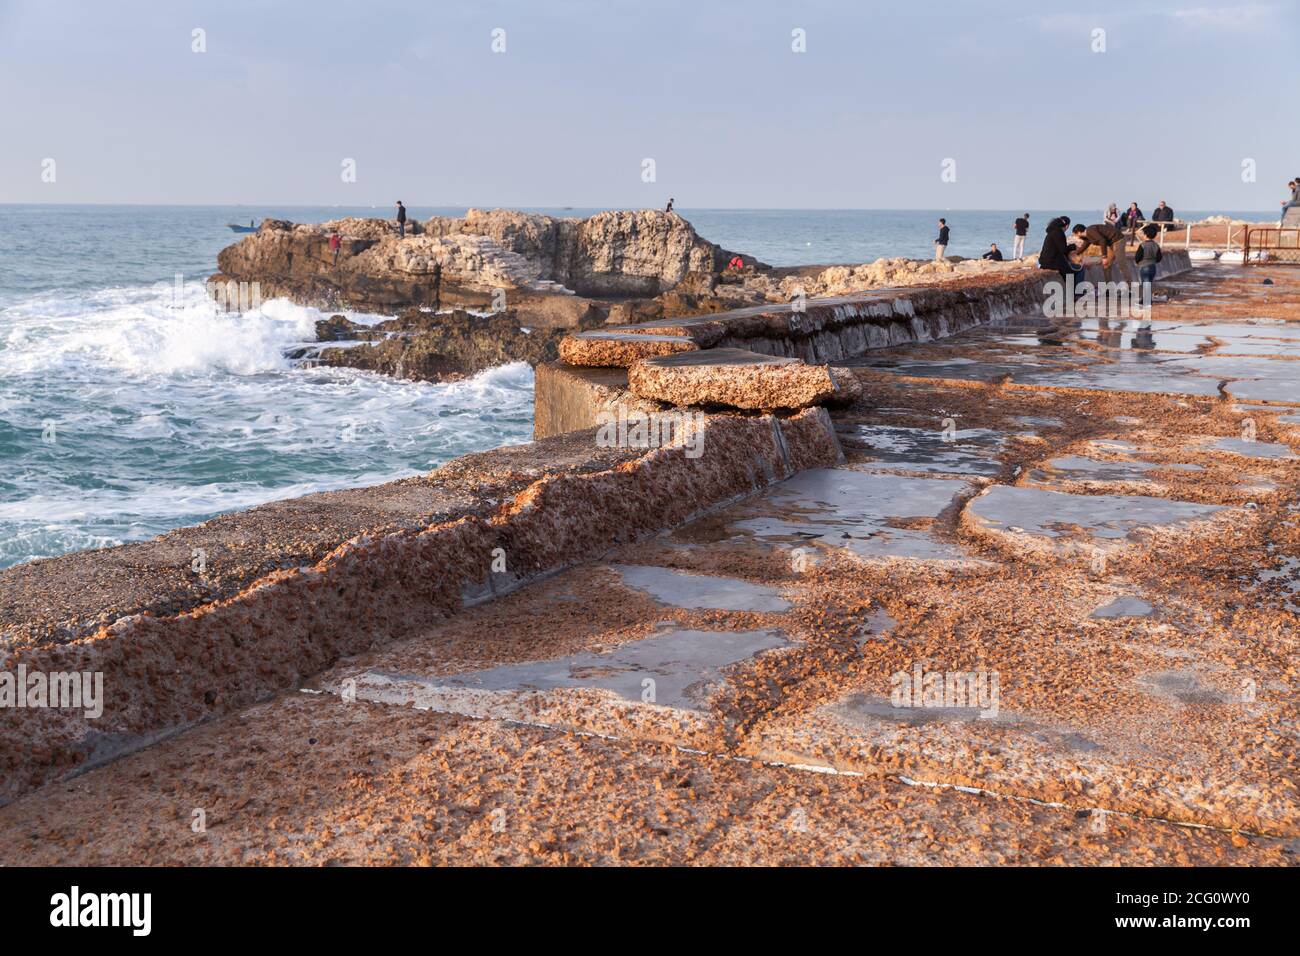 Alessandria, Egitto - 13 dicembre 2018: Paesaggio con rovinate fortificazioni costiere in pietra. La gente cammina sul molo Foto Stock